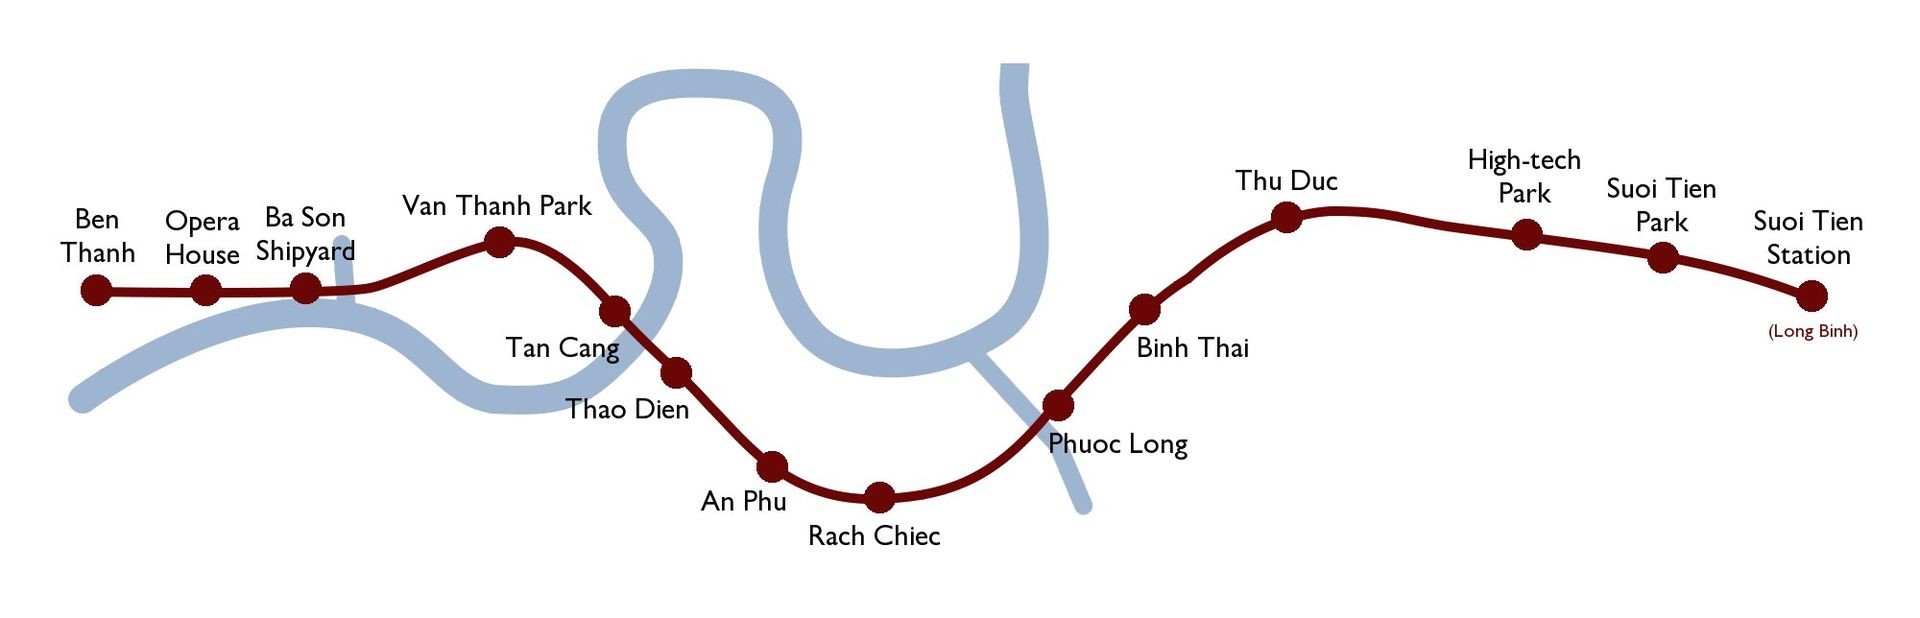 Saigon metro map